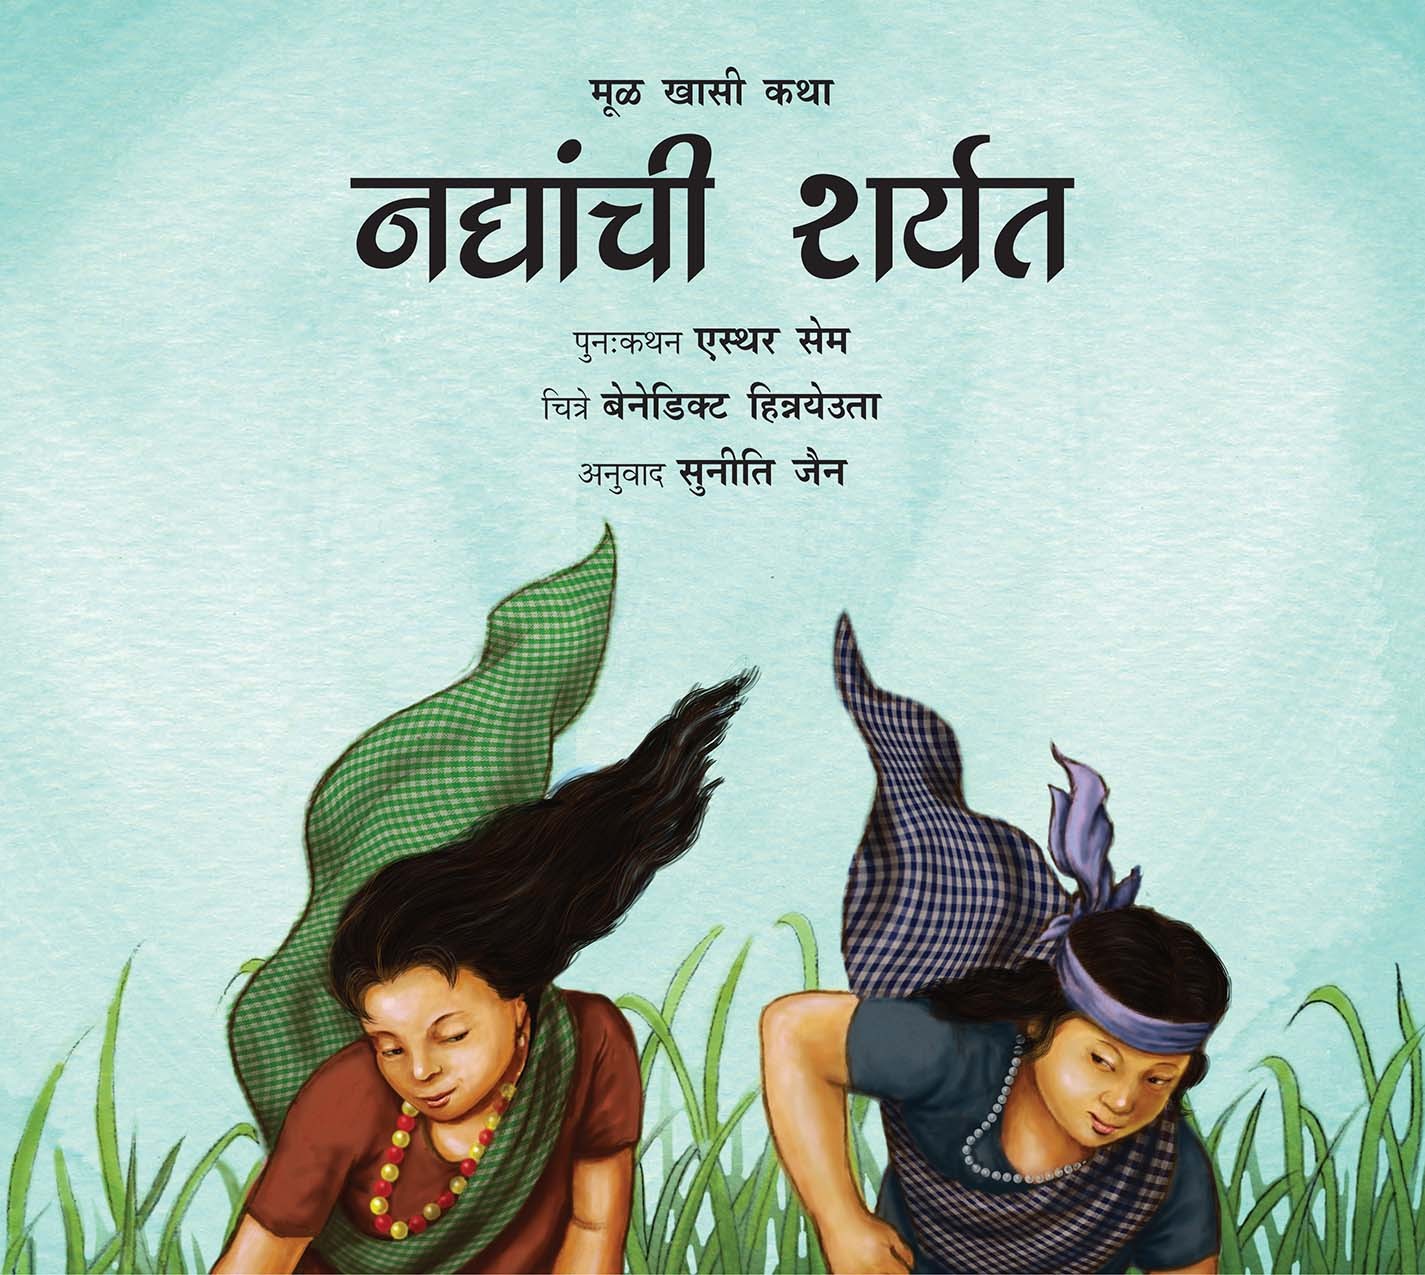 Race Of The Rivers/Nadiyanchi Sharyat (Marathi)